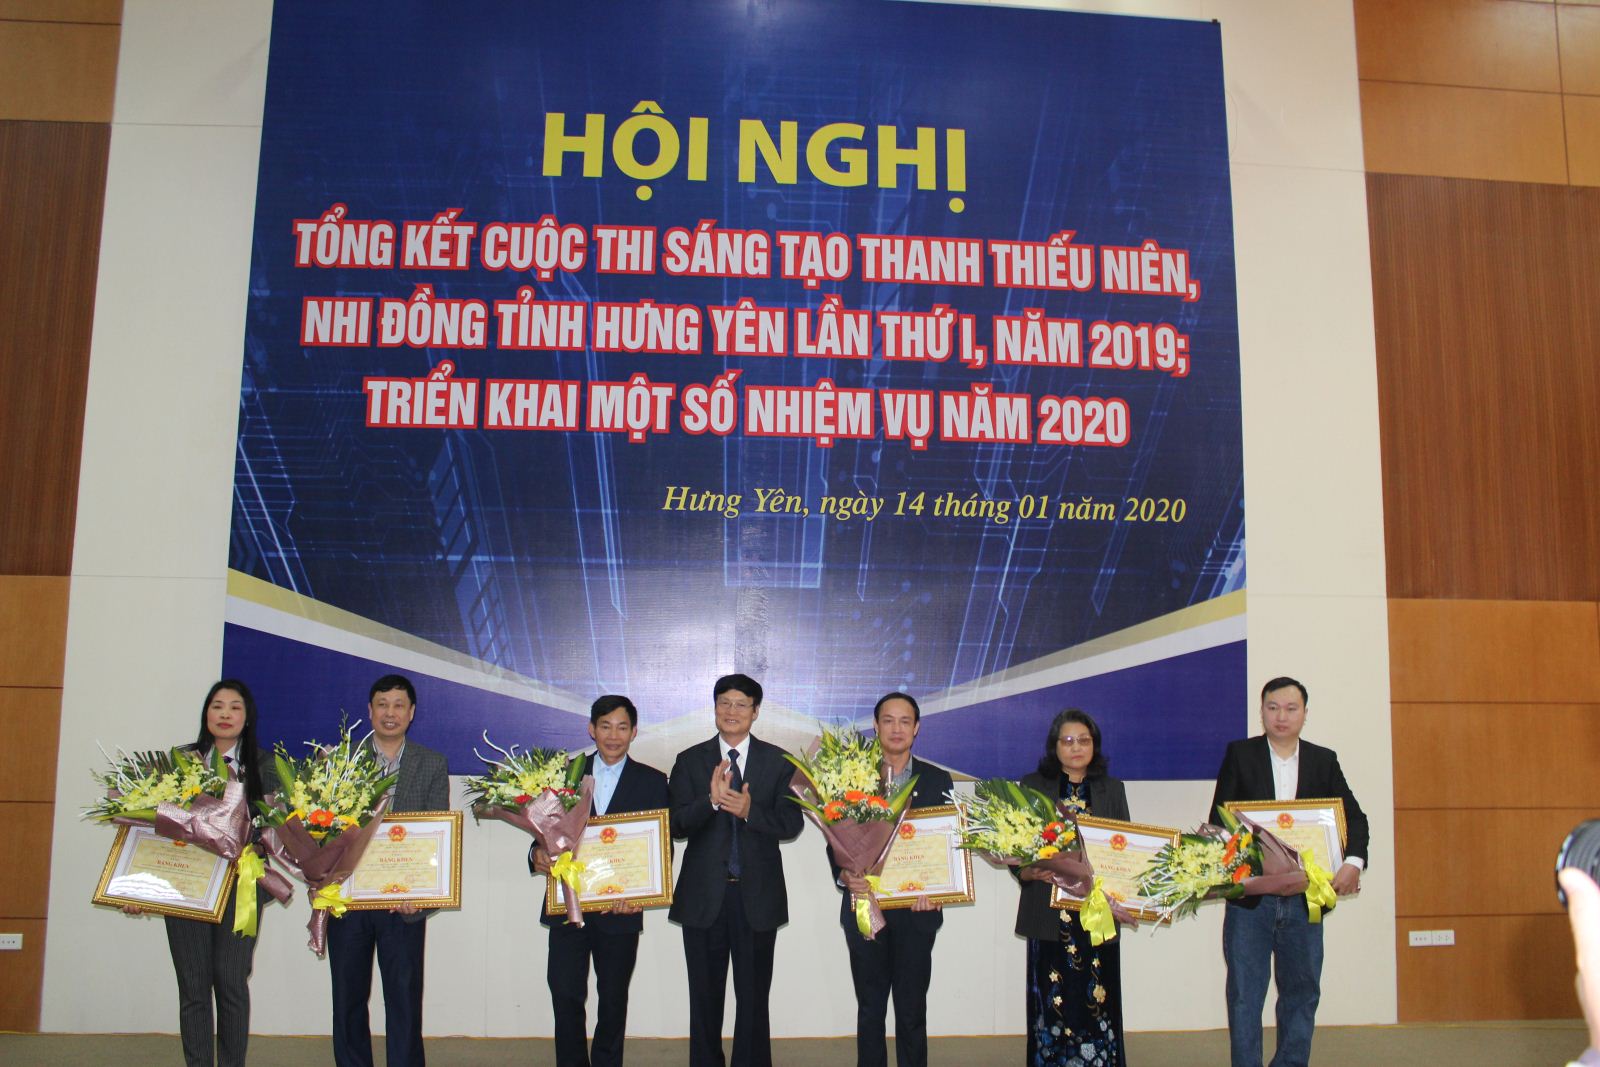 Tổng kết và trao giải Cuộc thi sáng tạo Thanh thiếu niên nhi đồng tỉnh Hưng Yên lần thứ nhất I, năm 2019,  Phát động Hội thi sáng tạo kỹ thuật tỉnh lần thứ III, năm 2020